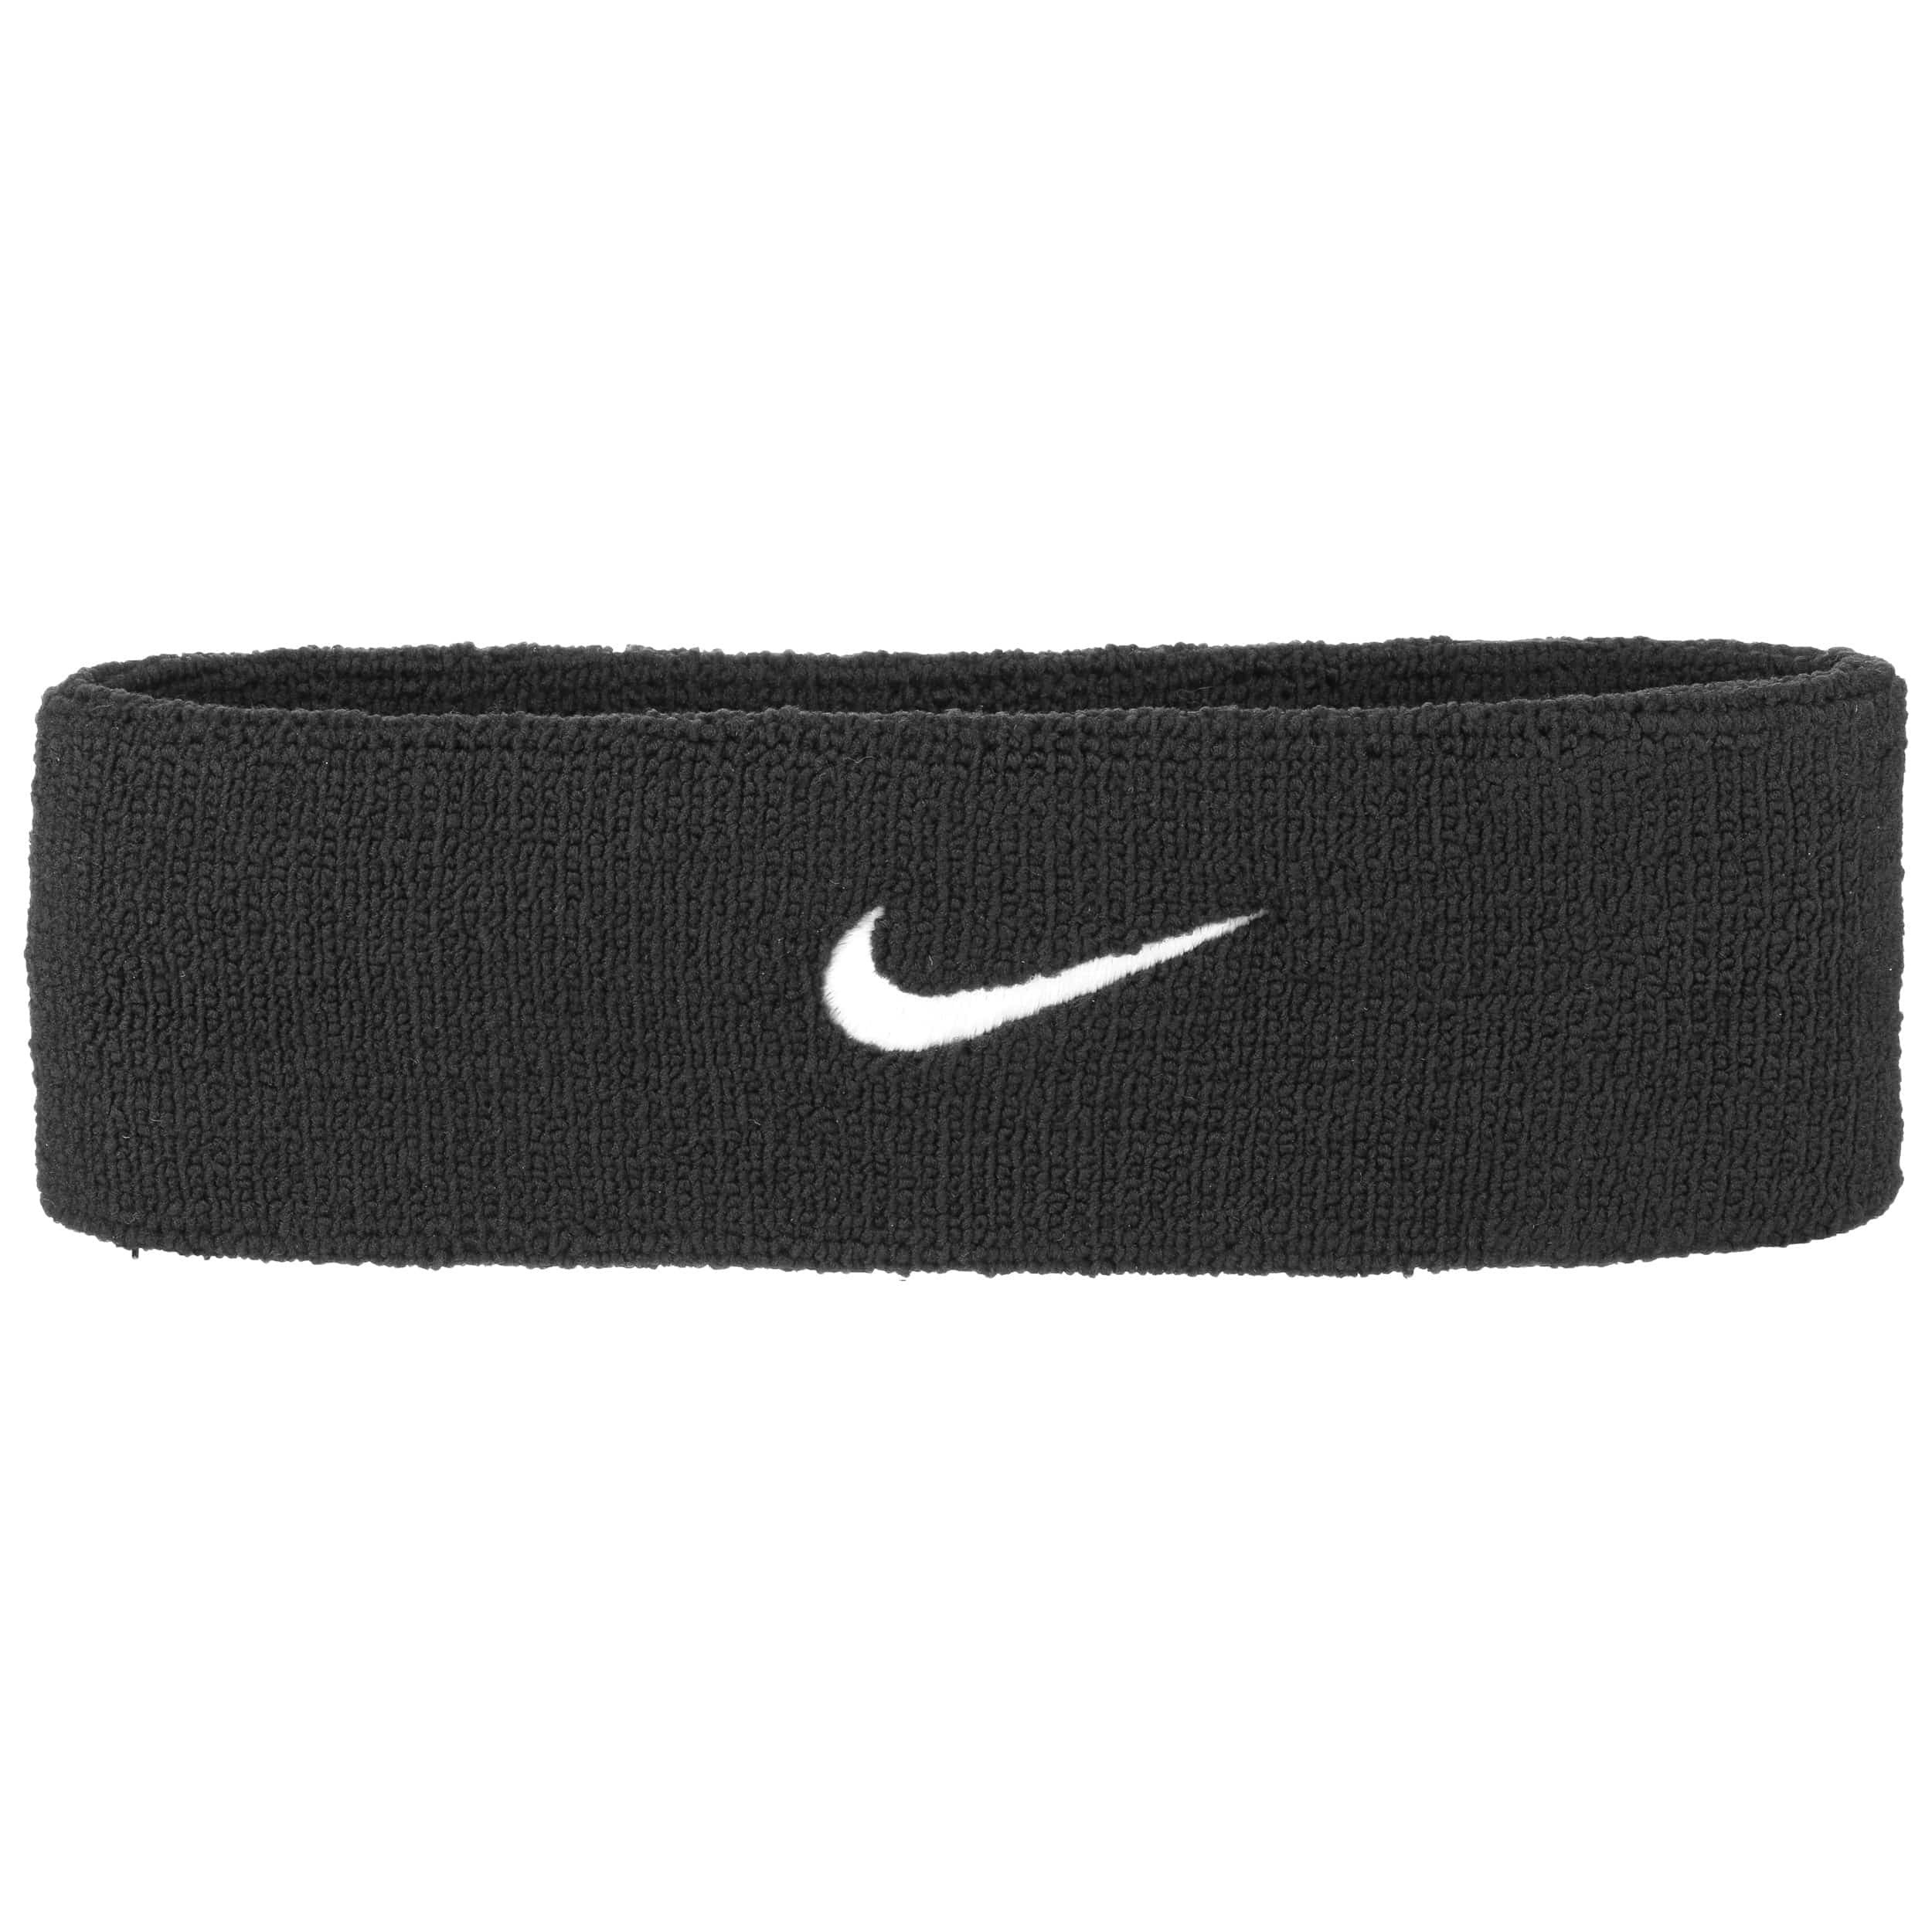 Dri-FIT Headband 2.0 by Nike - 16,95